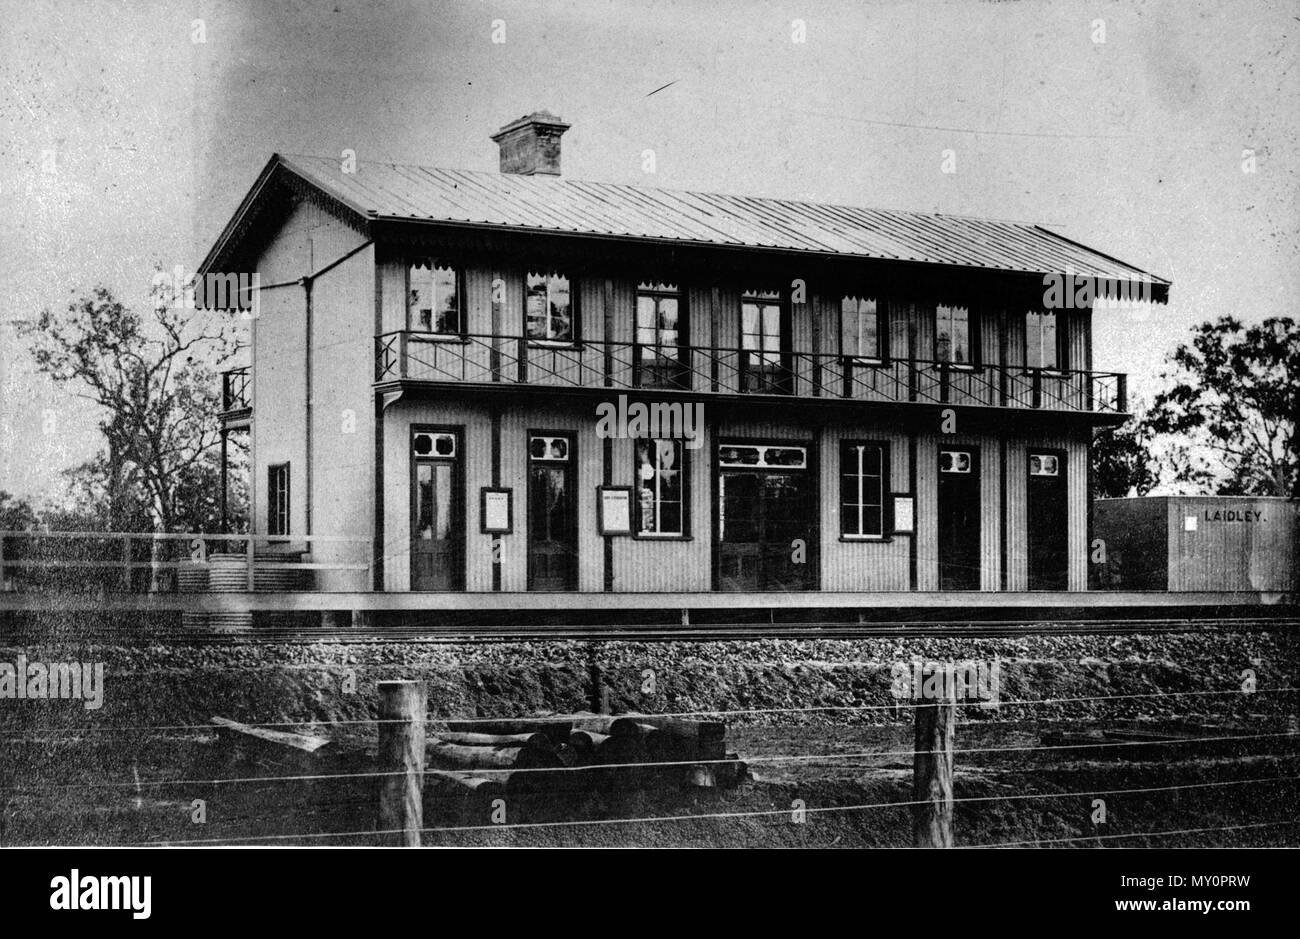 Gare, Laidley. Laidley est un village rural à 65 km à l'ouest du centre de Brisbane. Une ville a été arpentée en 1858 lors d'une étape sur la route de Ipswich à Toowoomba. Nommé Laidley, la ville se sont montrés peu situé à quand la ligne de chemin de fer a ouvert en 1866, l'activité s'installe à la gare. 'Nouveau' Laidley a dépassé vieille Laidley, où les touristes pourront désormais trouver un village de pionniers. Laidley a prospéré au début des années 1900. Comme une ville importante dans l'essor de la vallée de Lockyer, l'un des plus réussis du Queensland districts agricoles, il a vu une croissance considérable et de développement durin Banque D'Images